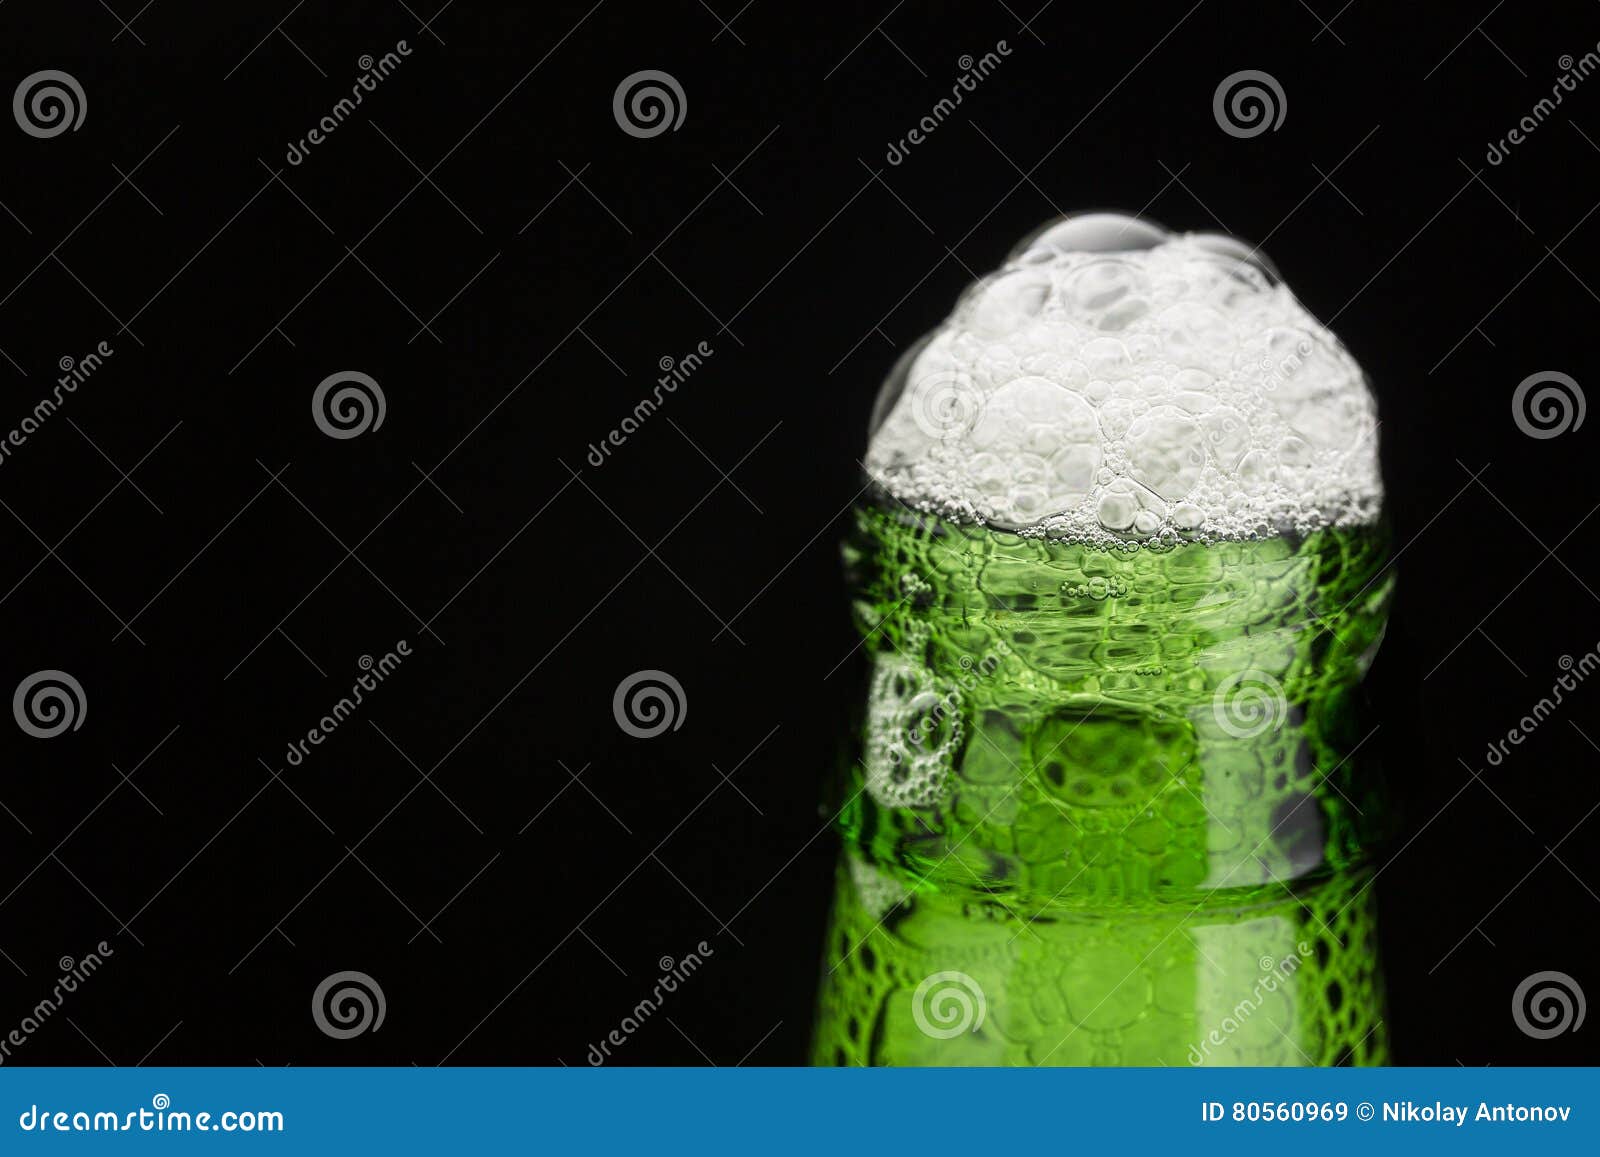 De groene hals van de bierfles met schuim op zwarte achtergrond